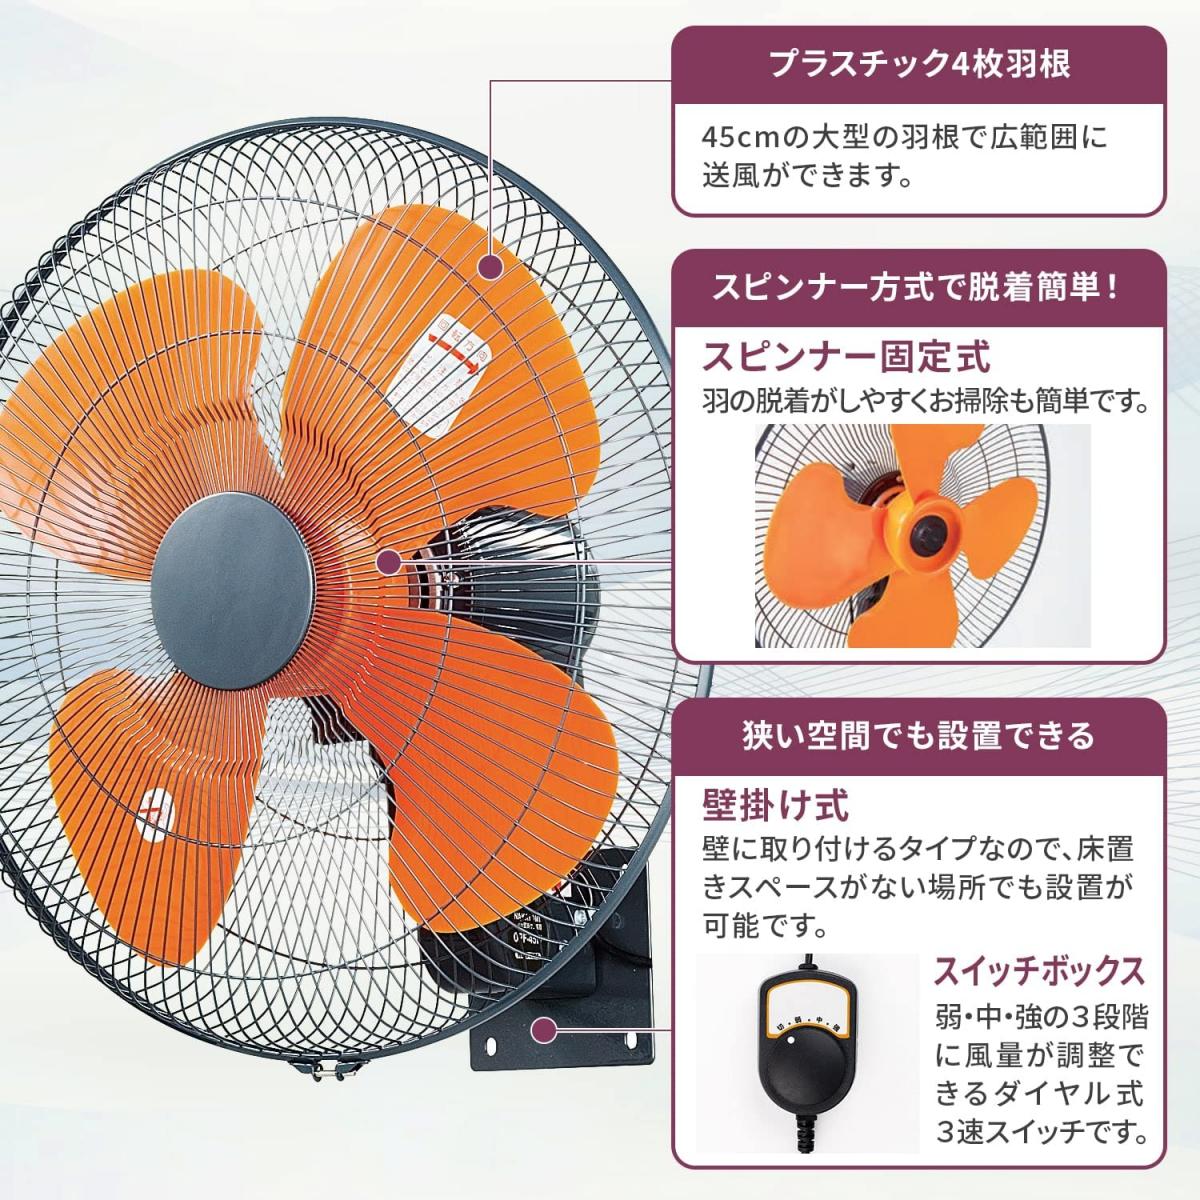 税込)ナカトミ(NAKATOMI) 45cm壁掛け工場扇(開放式) OPF-45W 作業用冷暖房器具